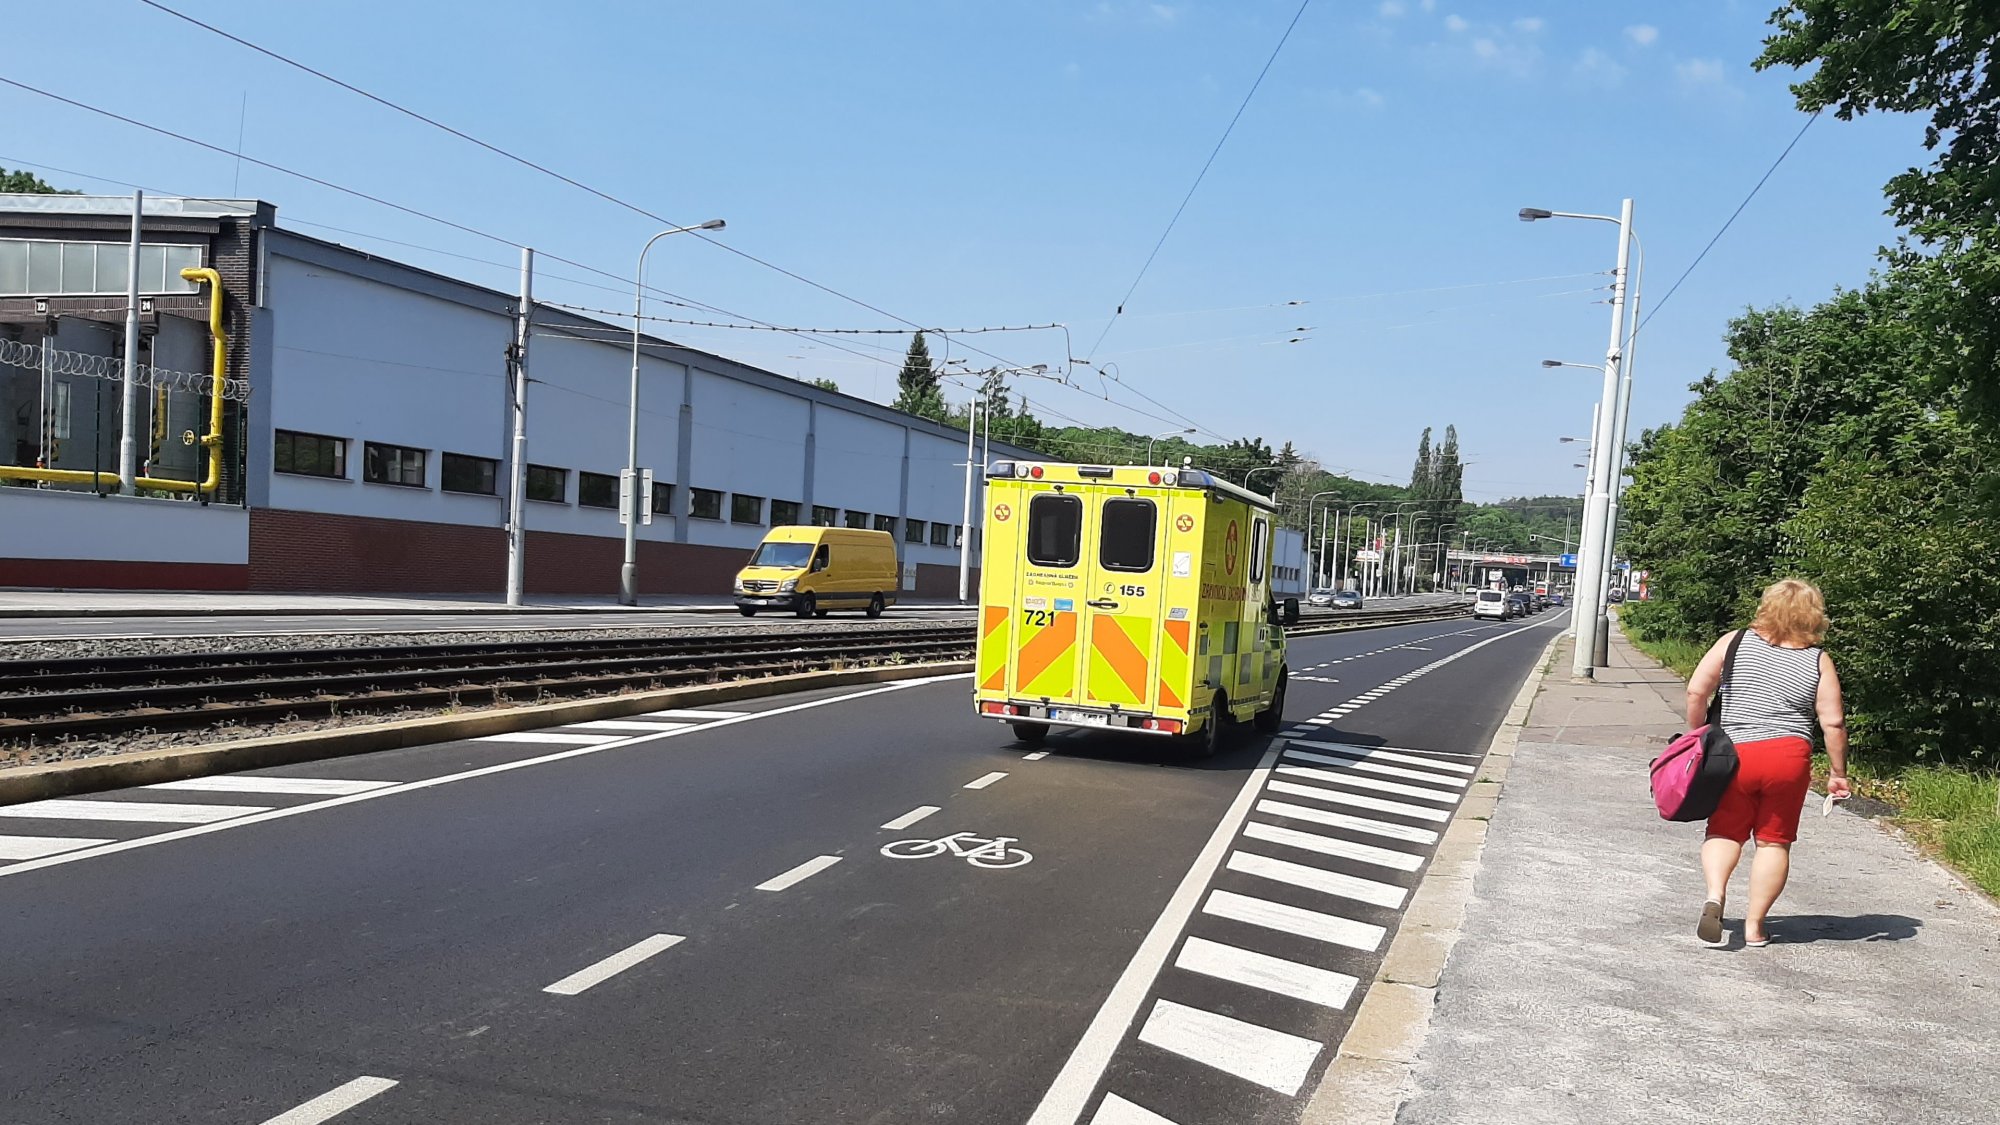 Dopravní omezení na Plzeňské ulici komplikuje průjezd vozidel záchranné služby a ohrožuje záchranu životů. Chceme po Magistrátu okamžitou nápravu!